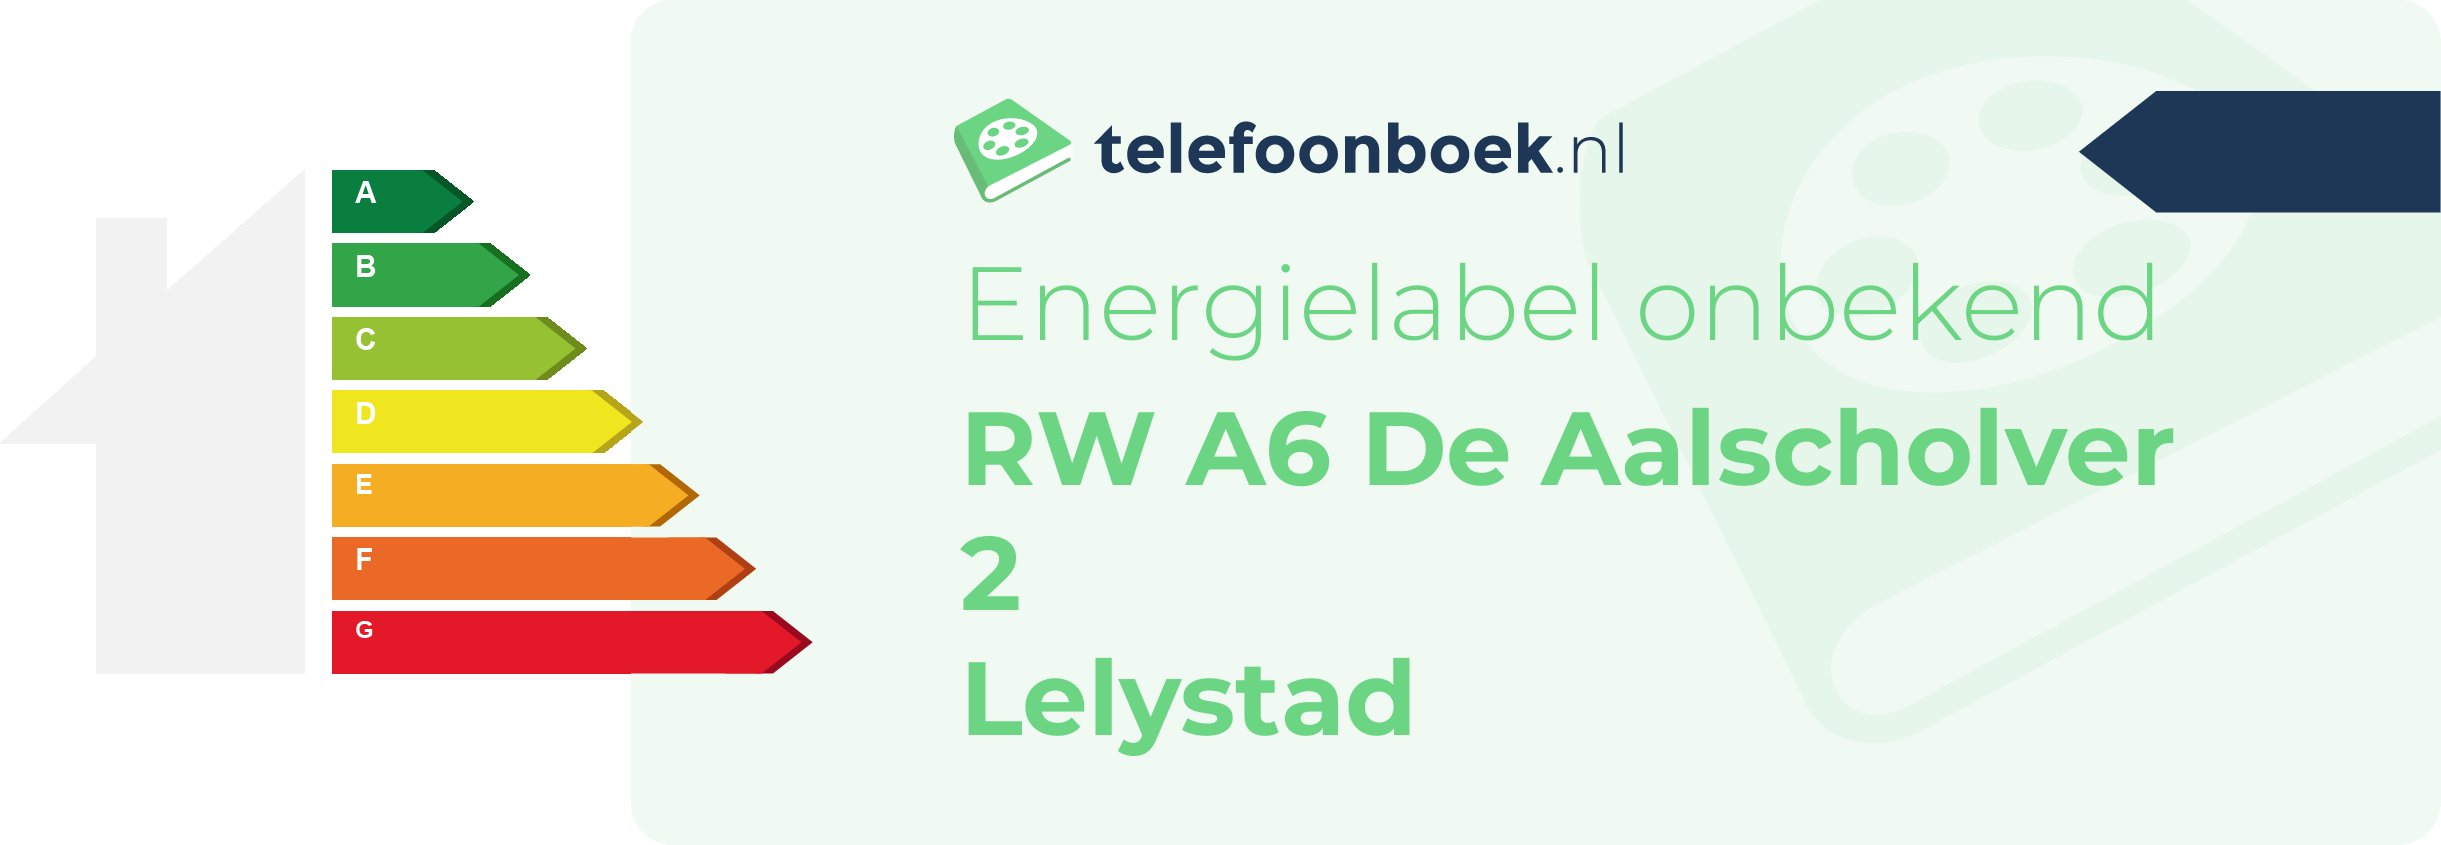 Energielabel RW A6 De Aalscholver 2 Lelystad